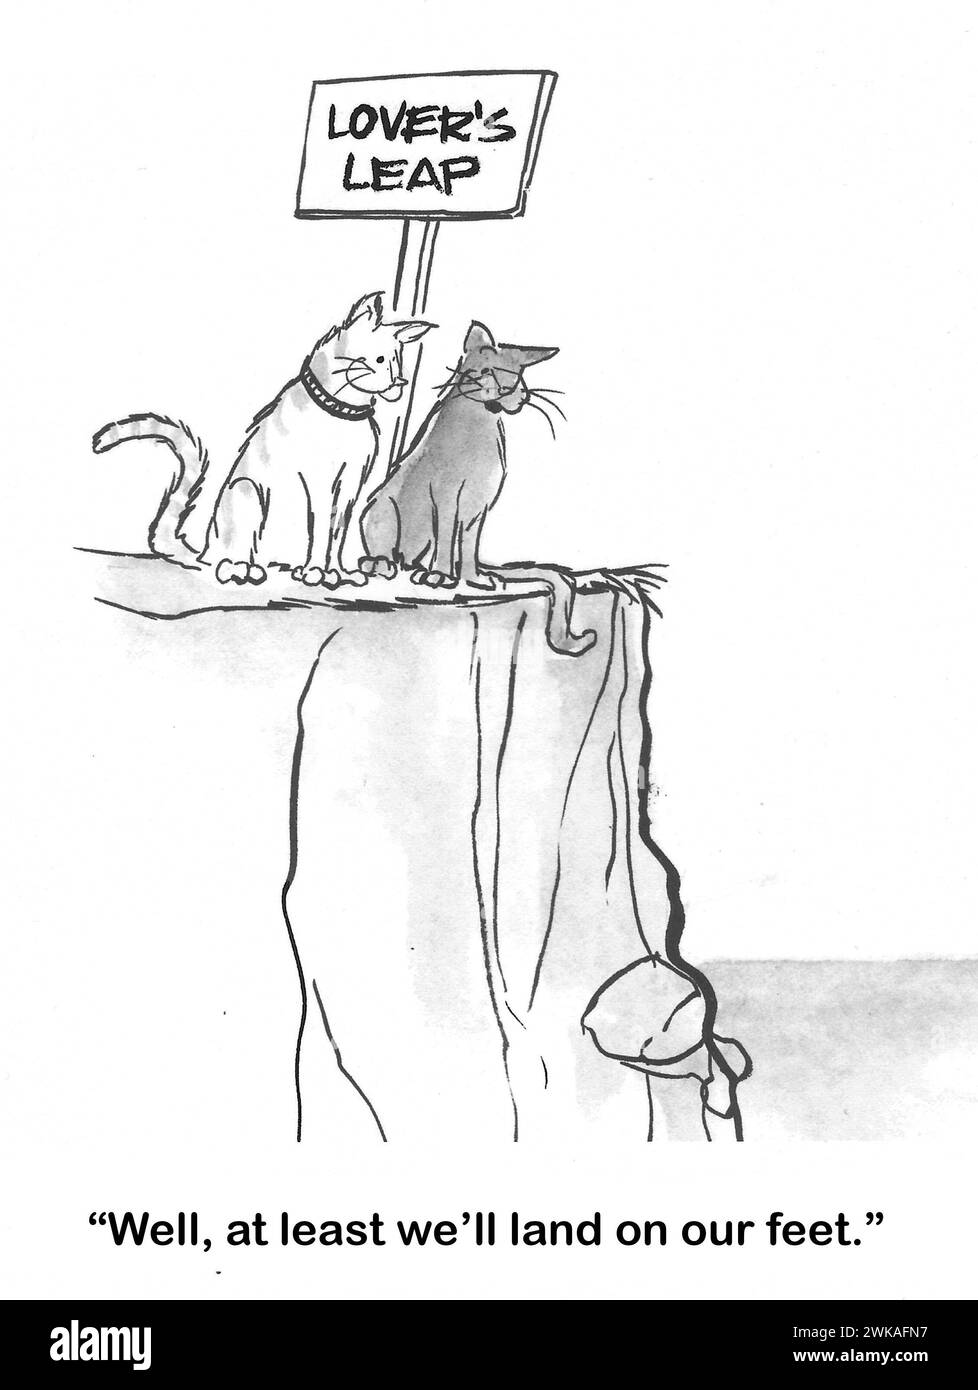 Bande dessinée BW de deux chats sur le point de sauter hors du saut de Lover - au moins ils vont atterrir sur leurs pieds. Banque D'Images